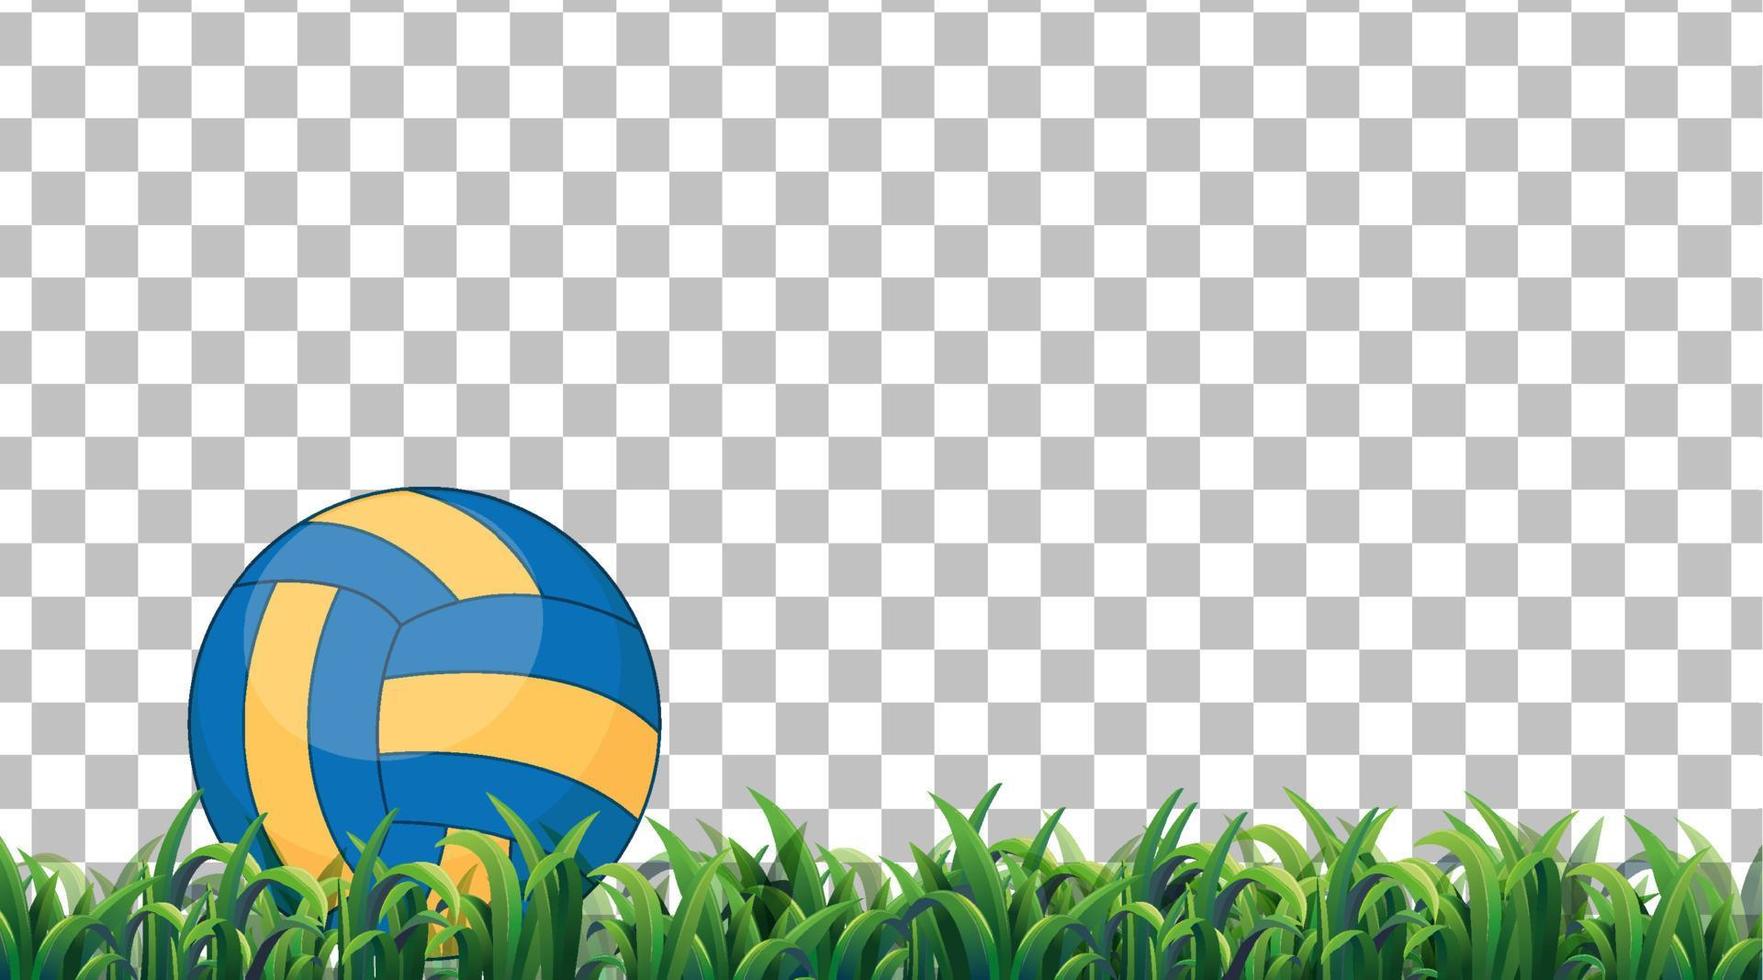 volleyboll på gräsplanen på rutnätbakgrund vektor